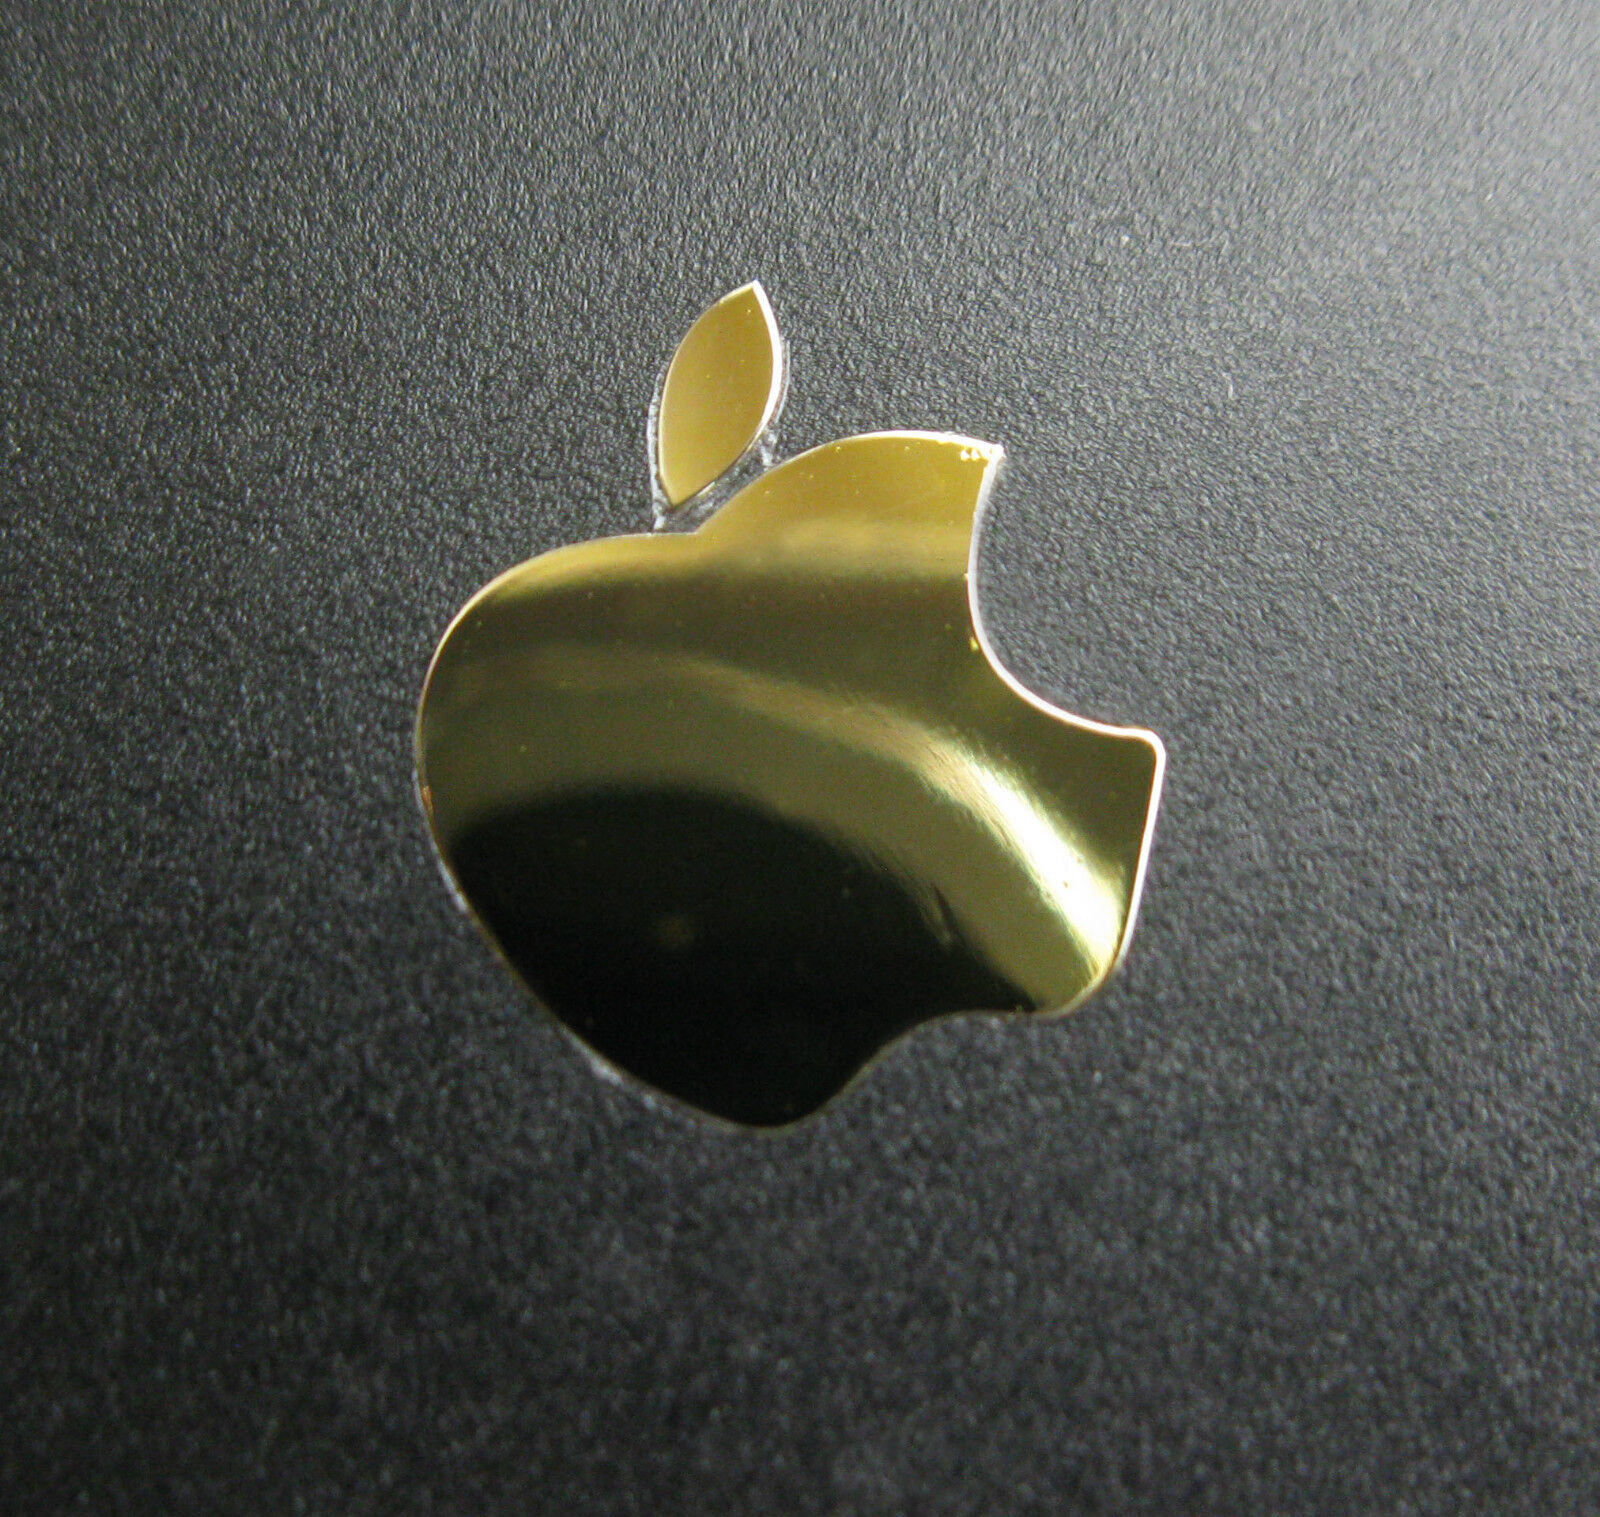 Apple Logo Label Aufkleber Sticker Badge Golden color decal 13mm x 16mm